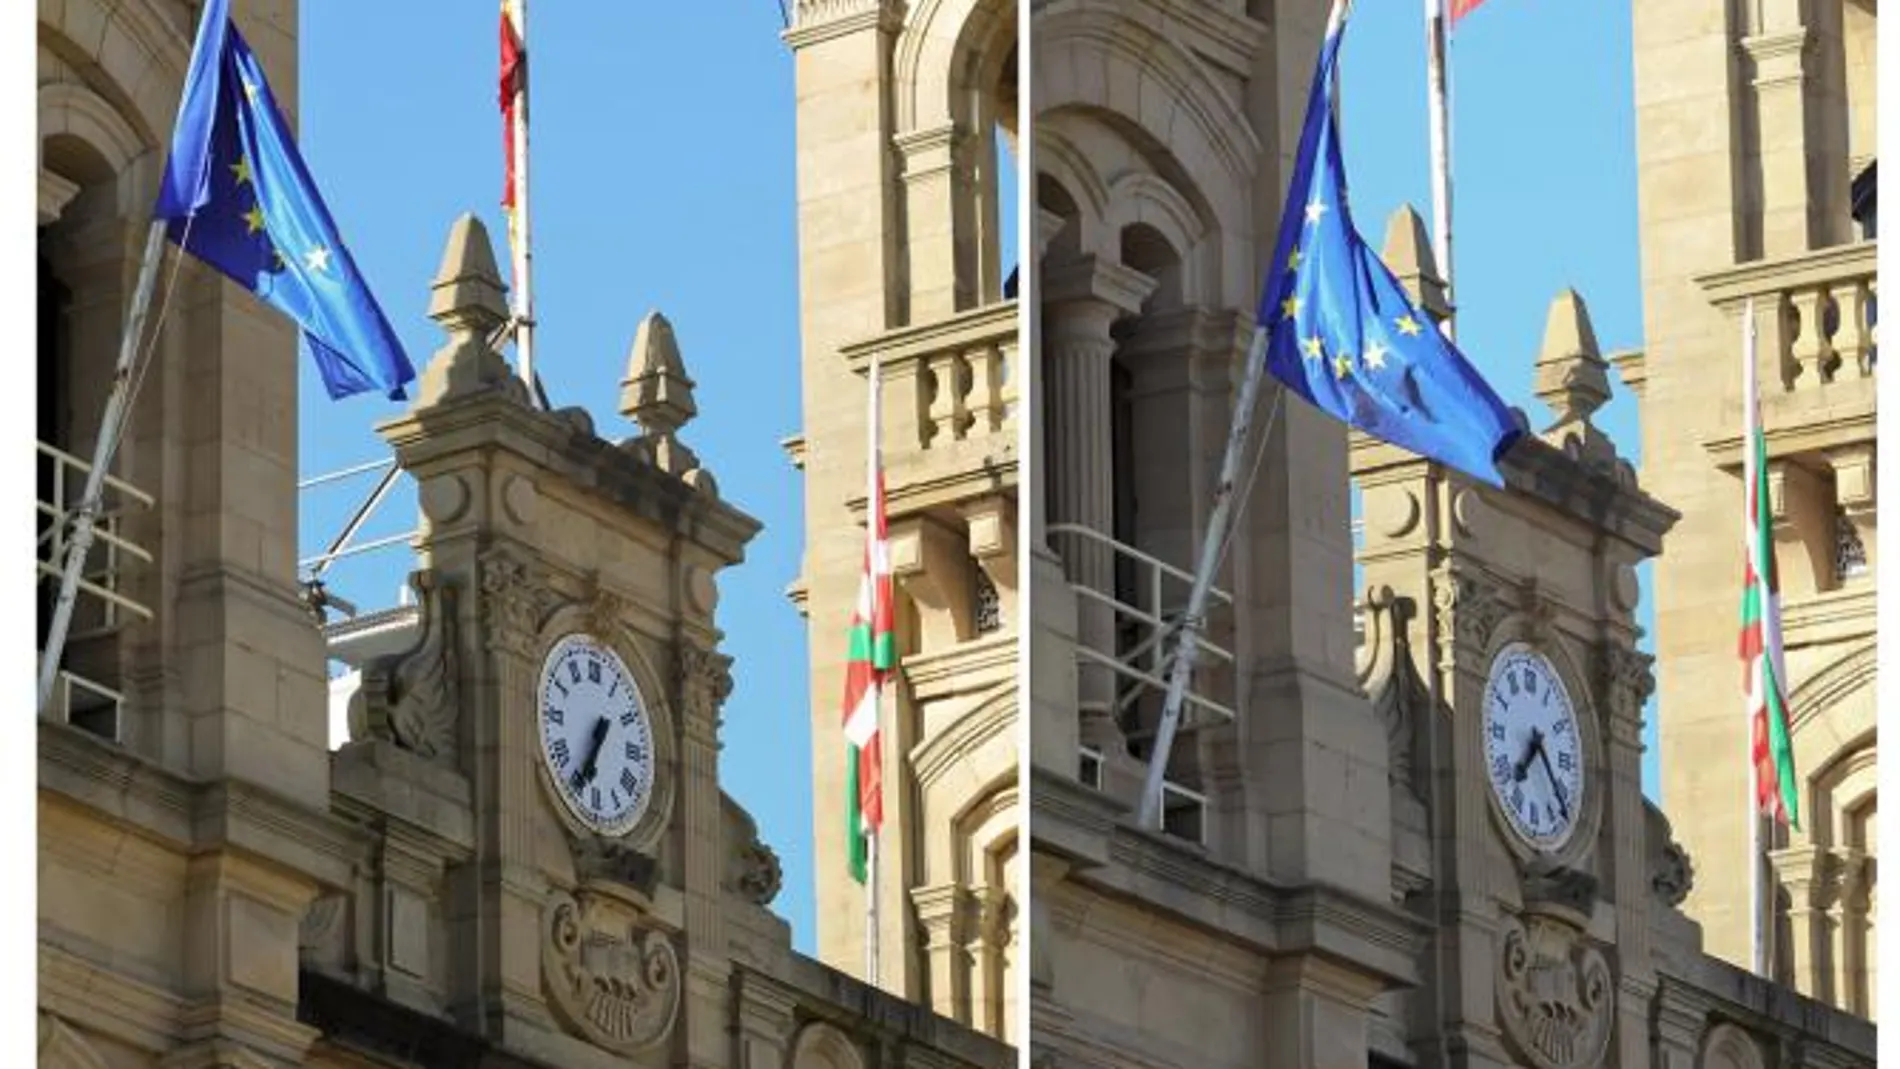 La bandera española en la fachada del Ayuntamiento de San Sebastián fue de nuevo objeto de controversia, al no ondear como el resto de las enseñas.